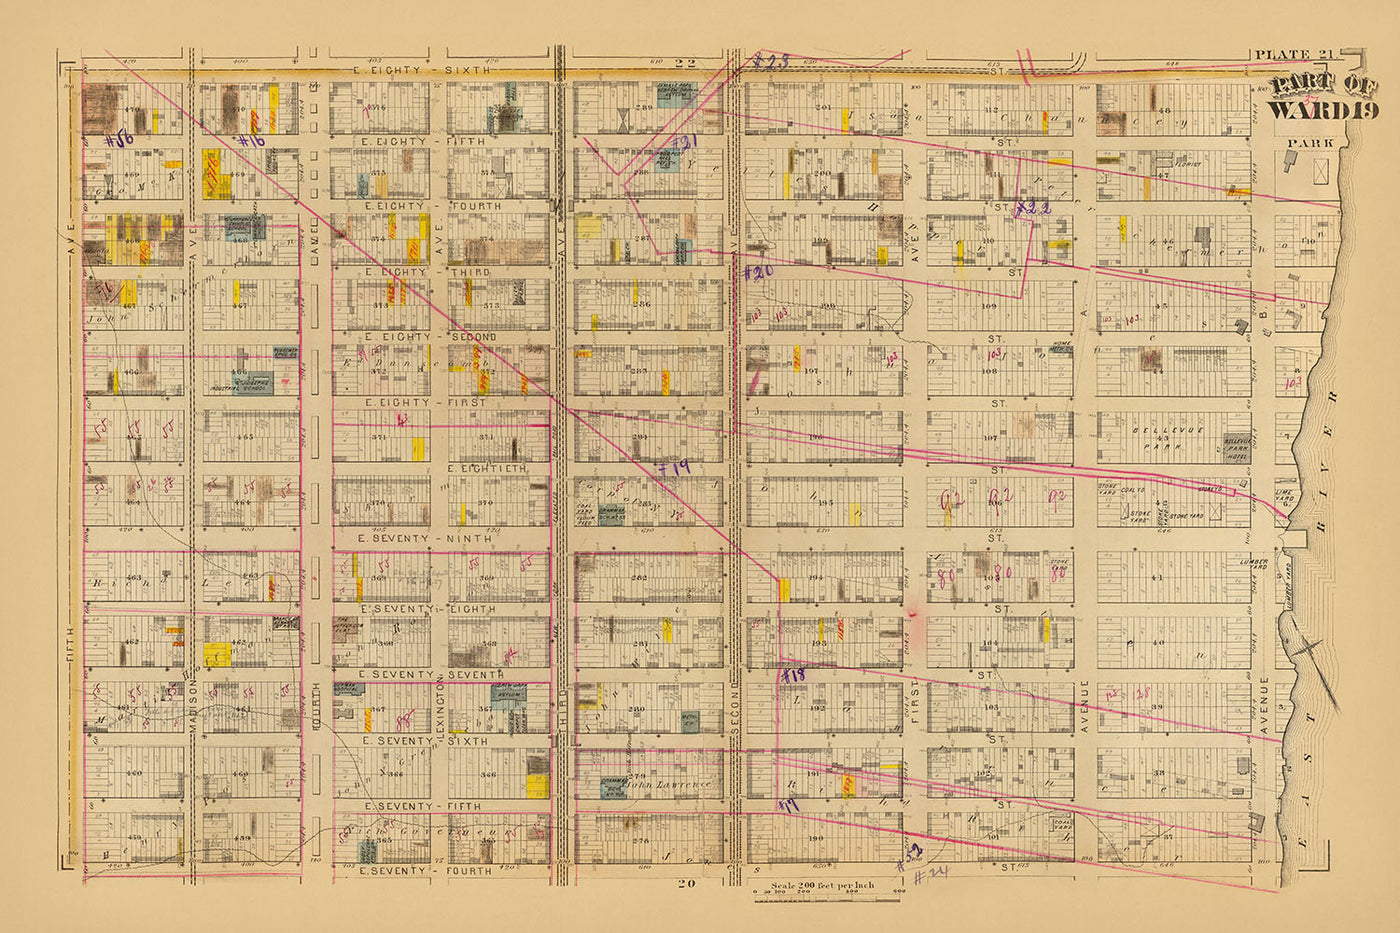 Alte Karte der Upper East Side, NYC von Bromley, 1879: Ward 19, East 74th bis East 86th Street